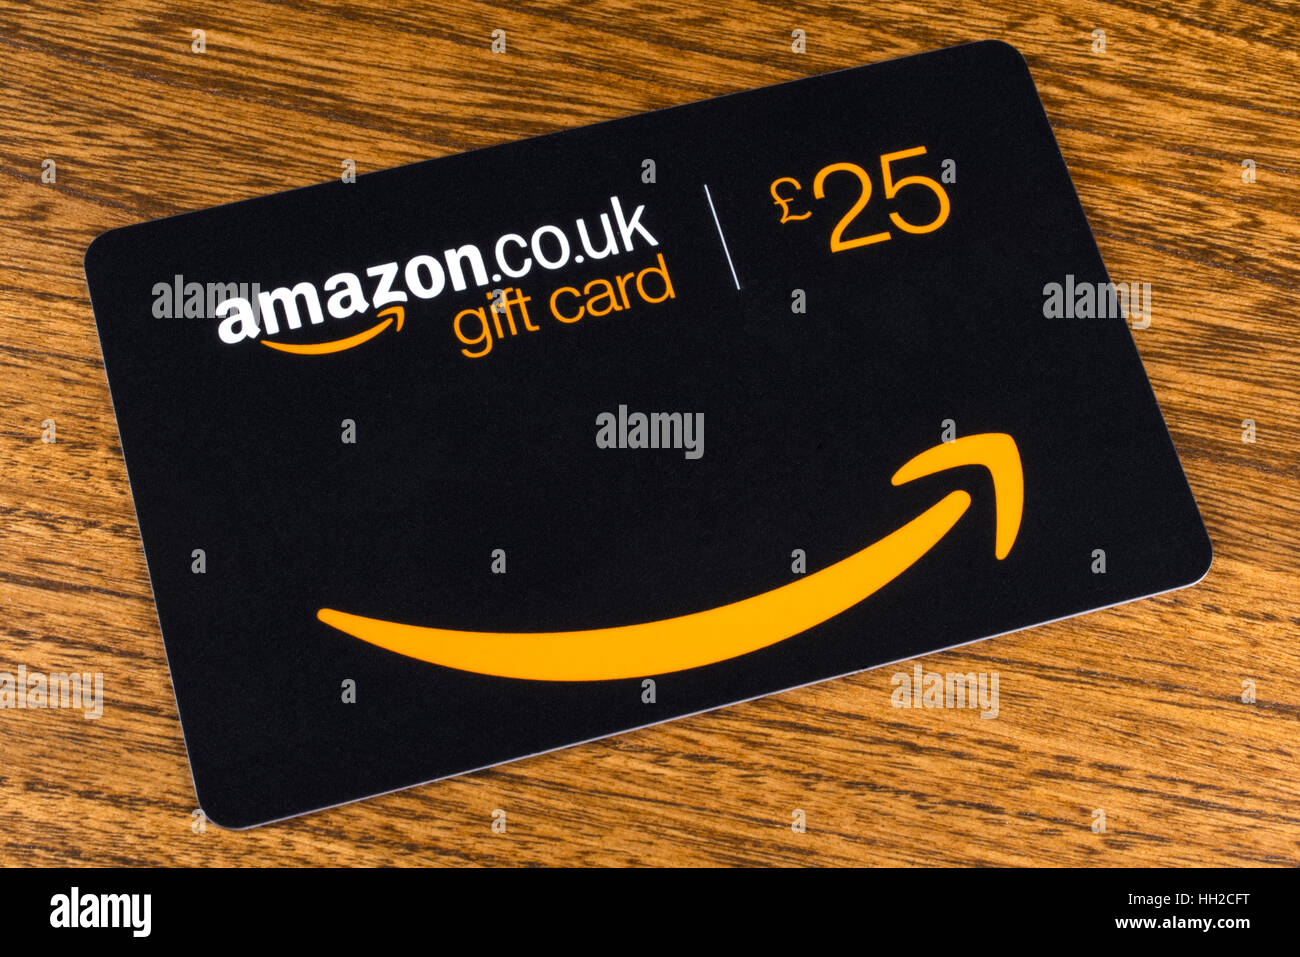 LONDON, Regno Unito - 13 GENNAIO 2017: una inquadratura ravvicinata di un £25 Amazon Gift Card su un tavolo, il 13 gennaio 2017. Foto Stock